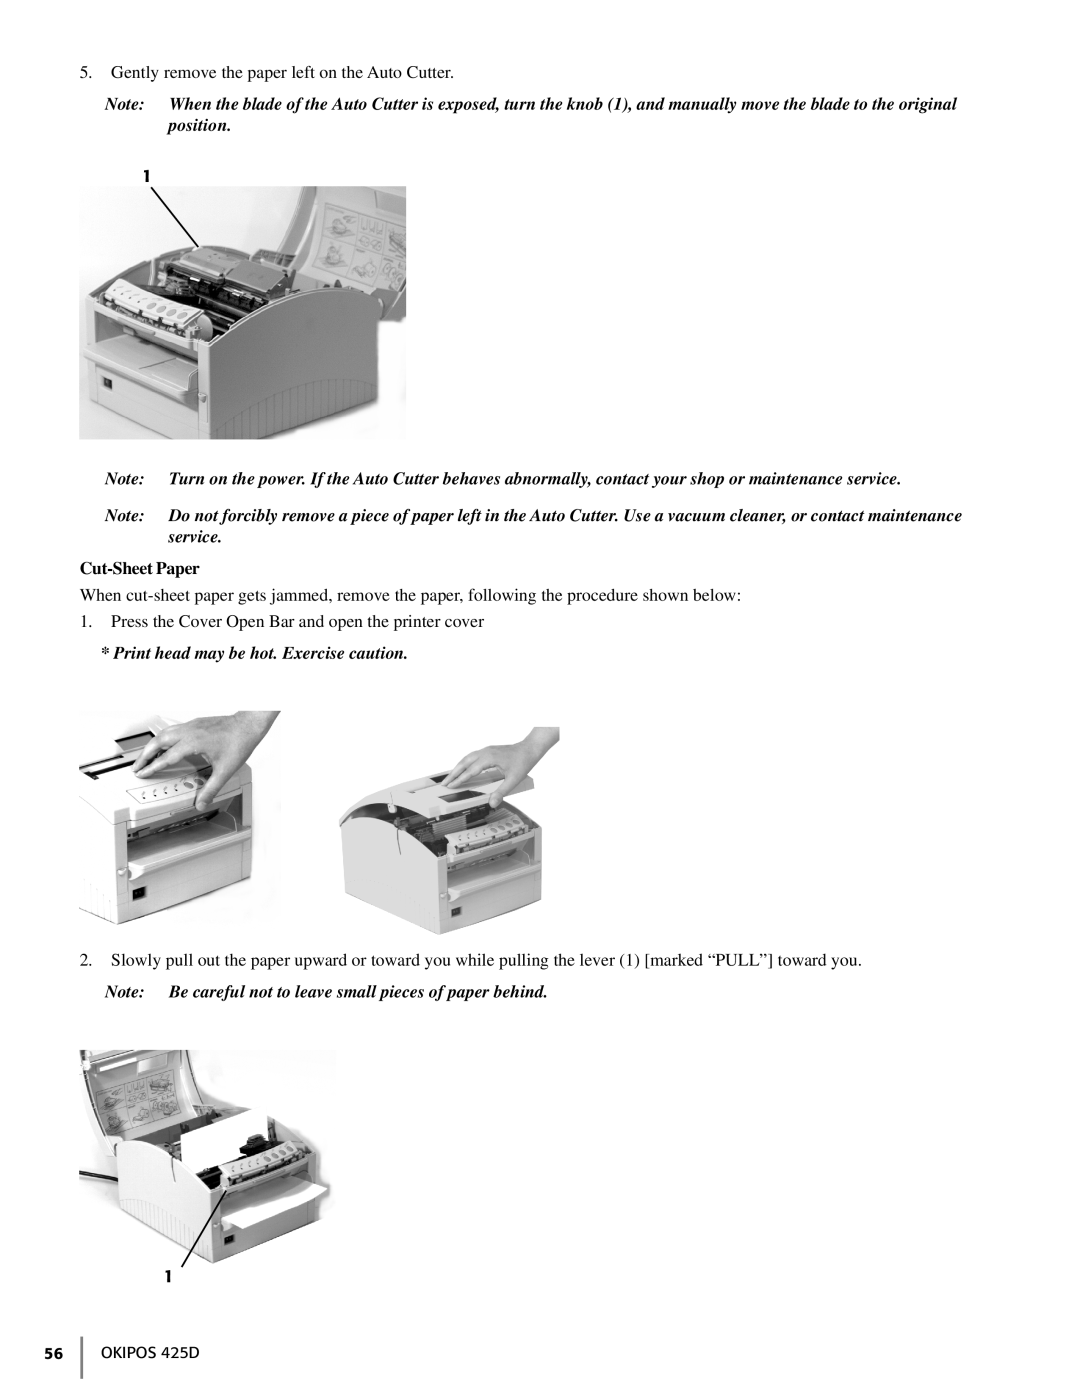 Oki 425D manual Cut-Sheet Paper 